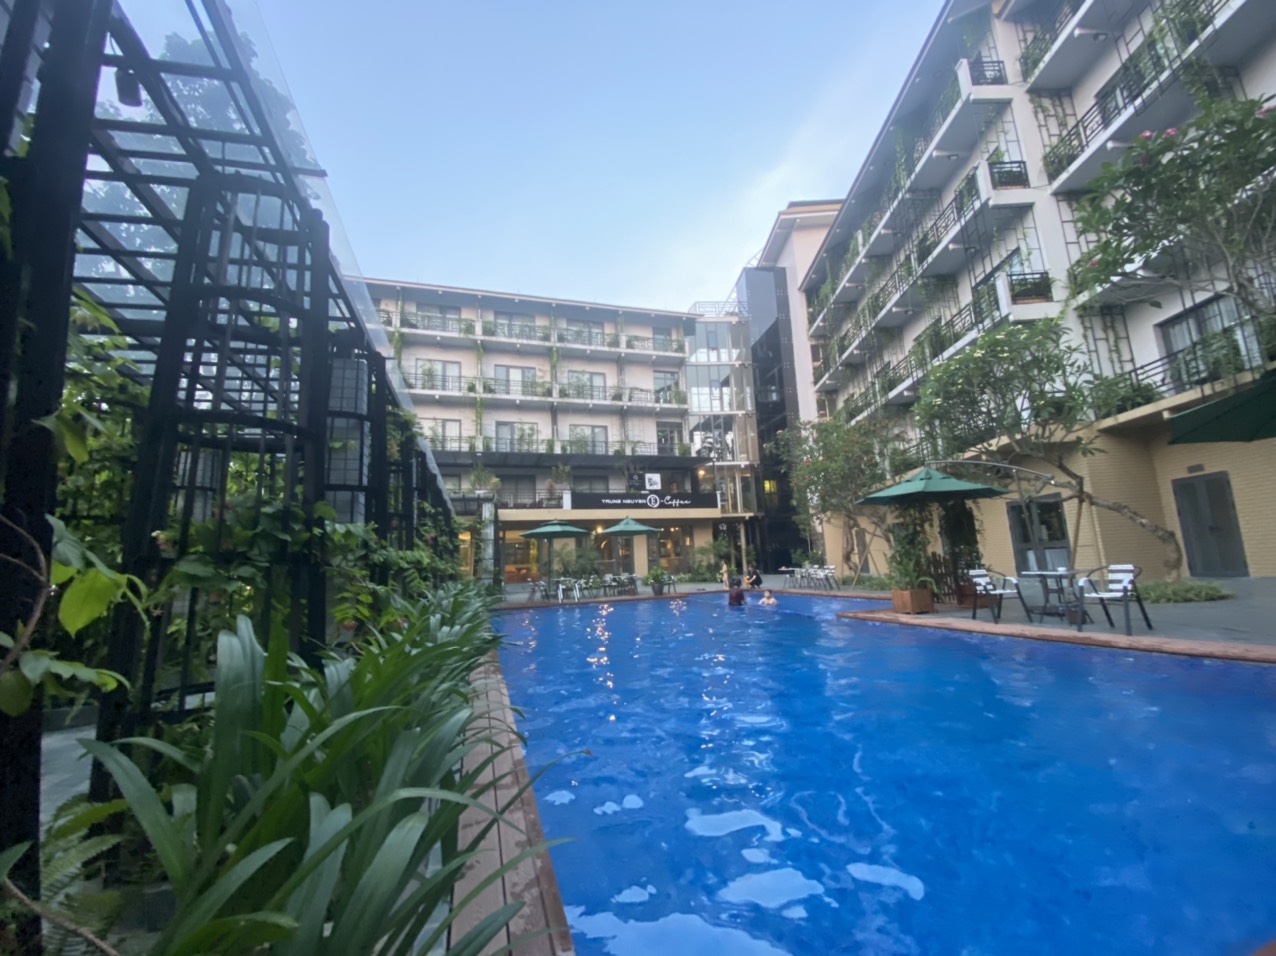 Bể bơi ngoài trời tại khách sạn nghỉ dưỡng Thái Nguyên - X Hotel